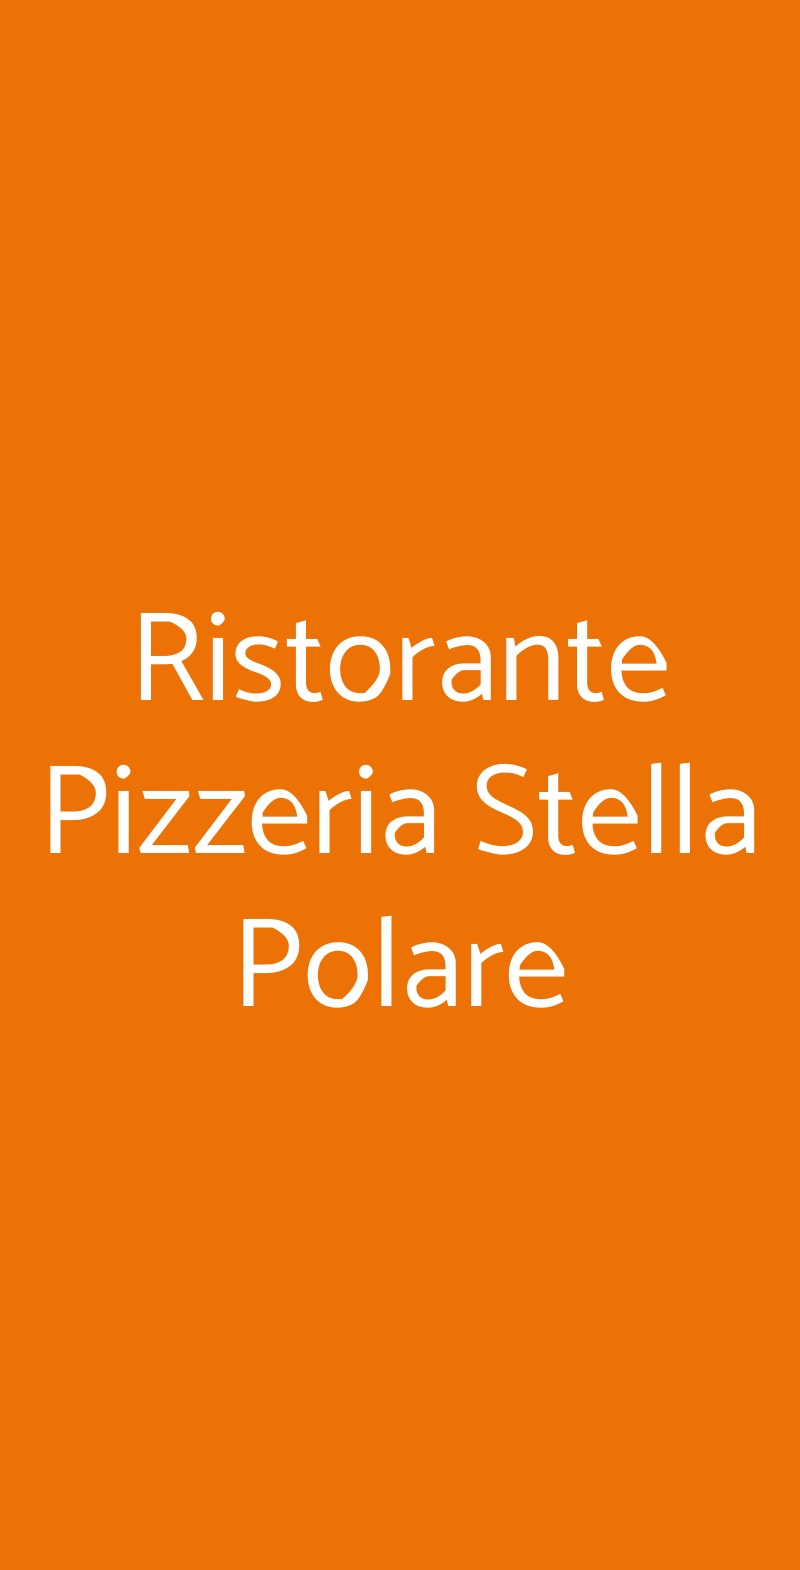 Ristorante Pizzeria Stella Polare Cortona menù 1 pagina